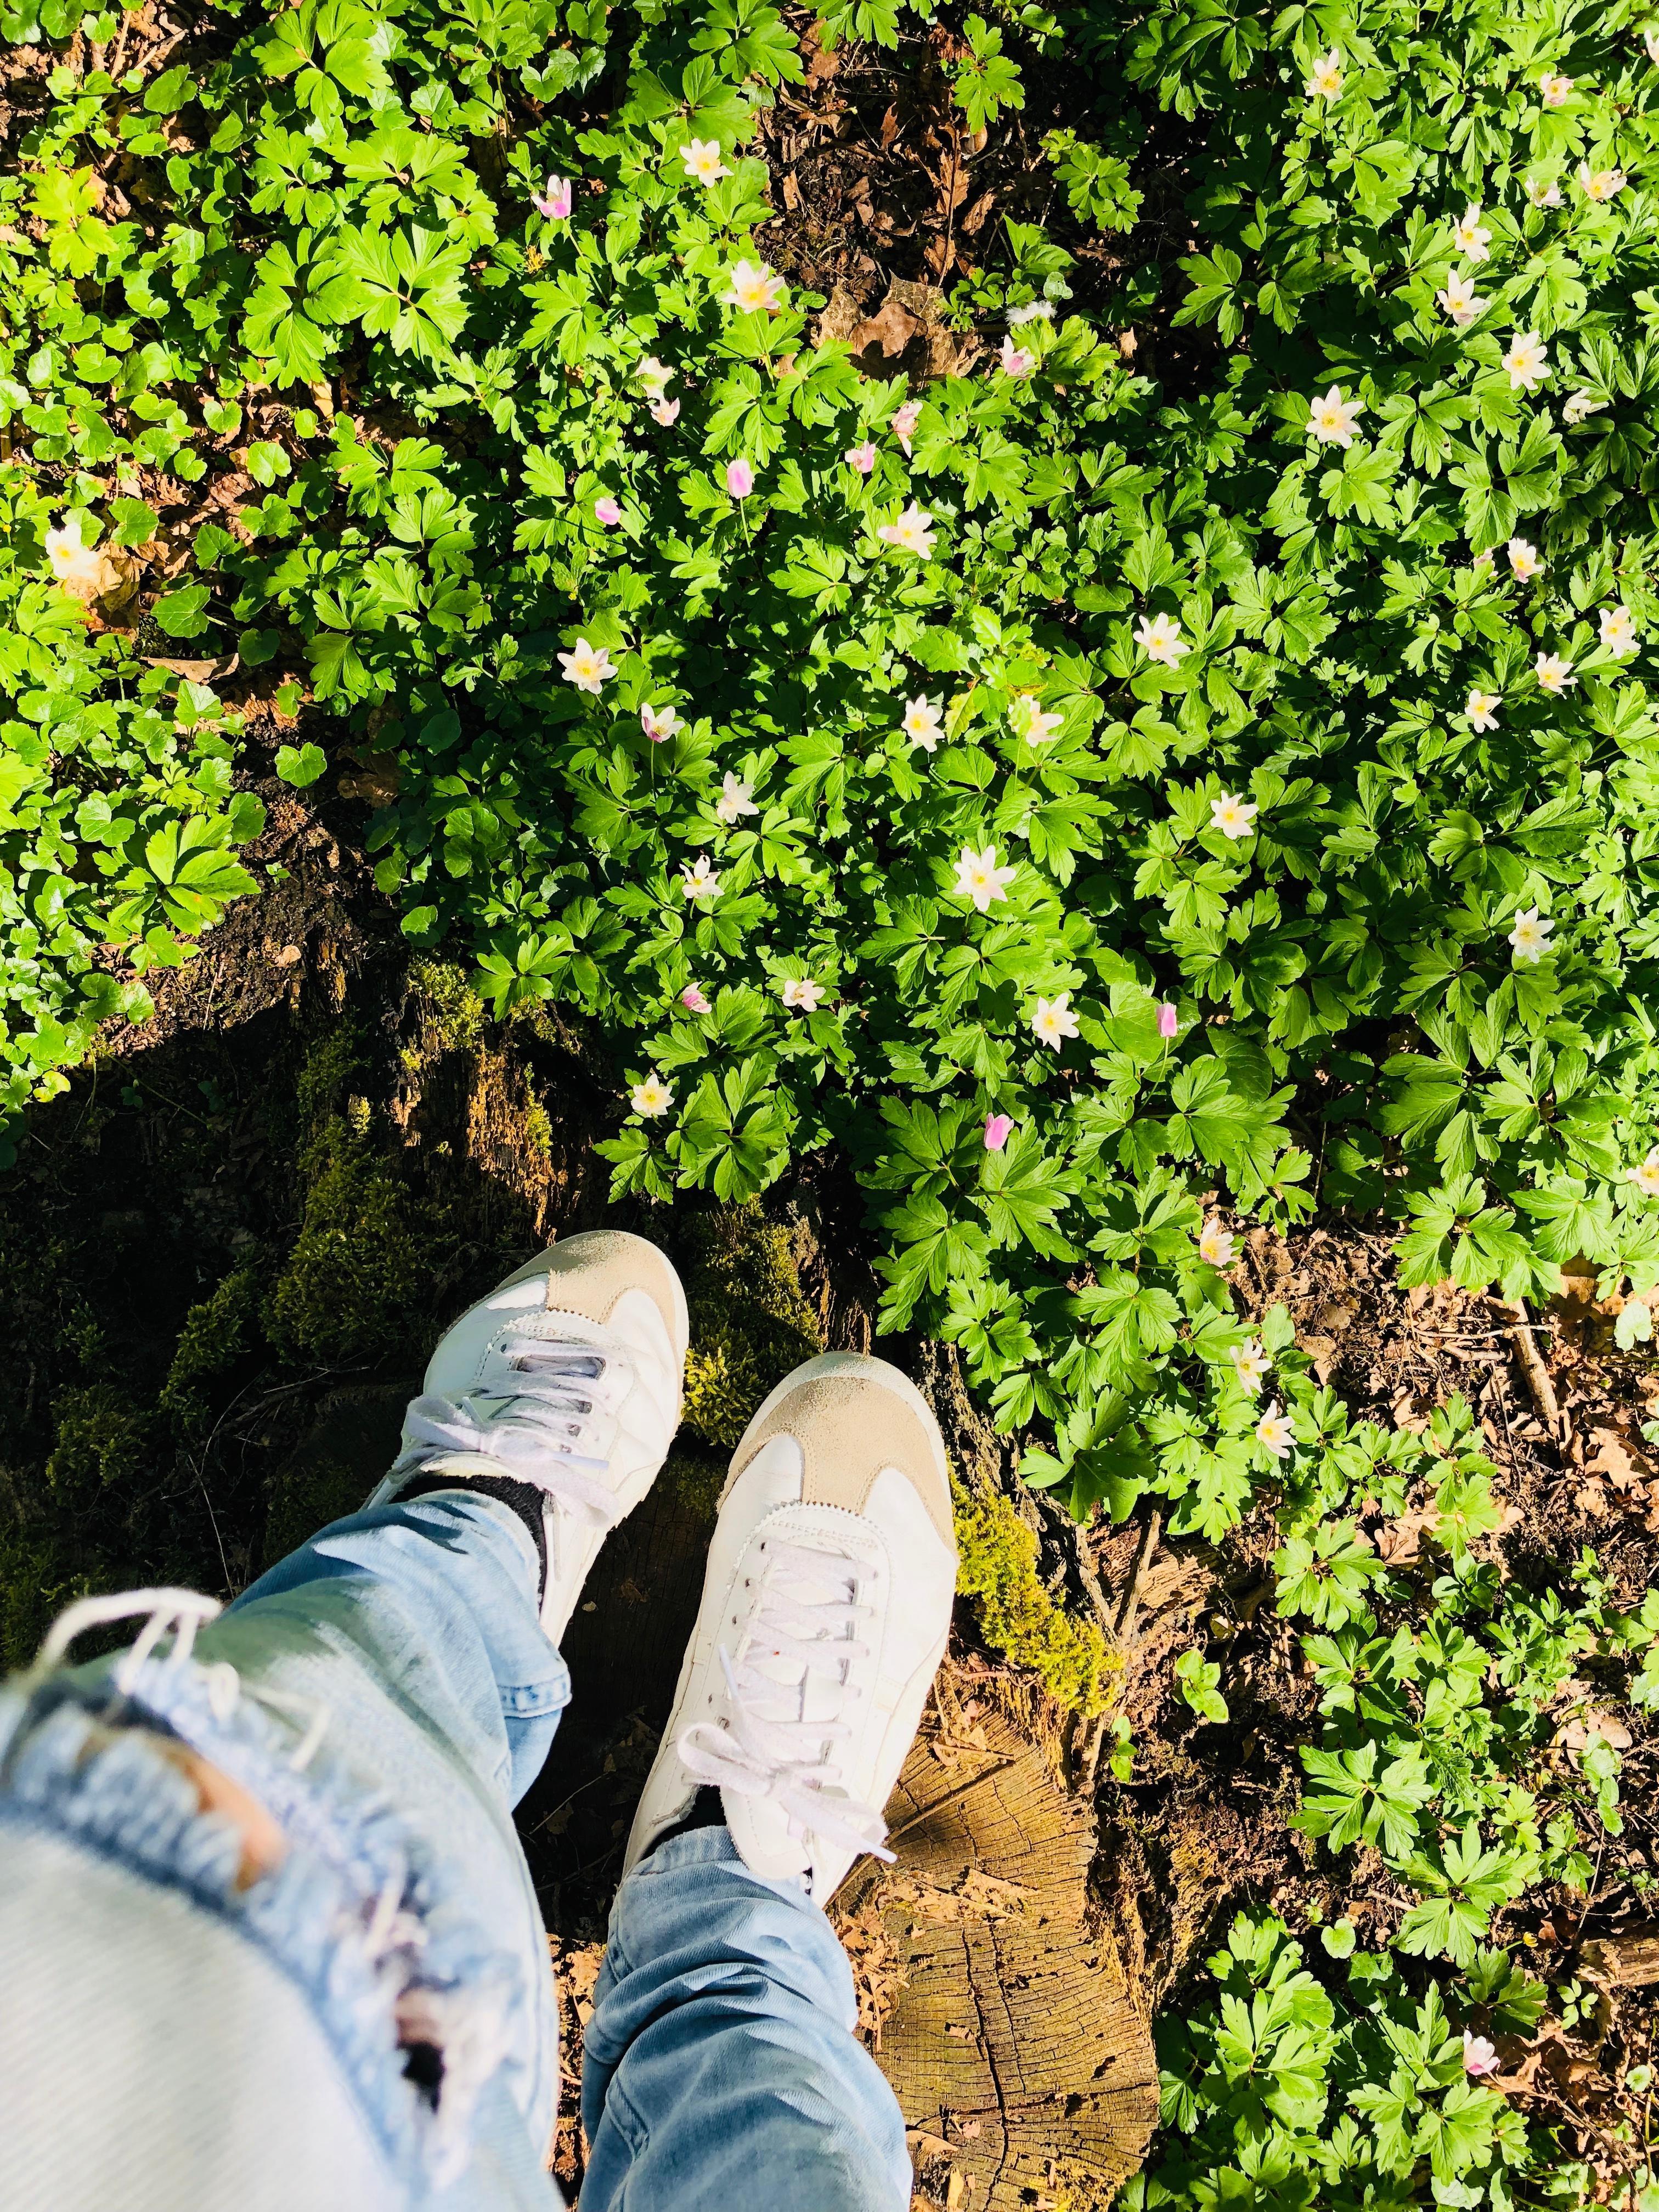 Spaziergang durch den Wald. Frage mich wie lange die #sneaker #weiß bleiben... 🤔 #onitsukatiger #fashion #schuhe #trend